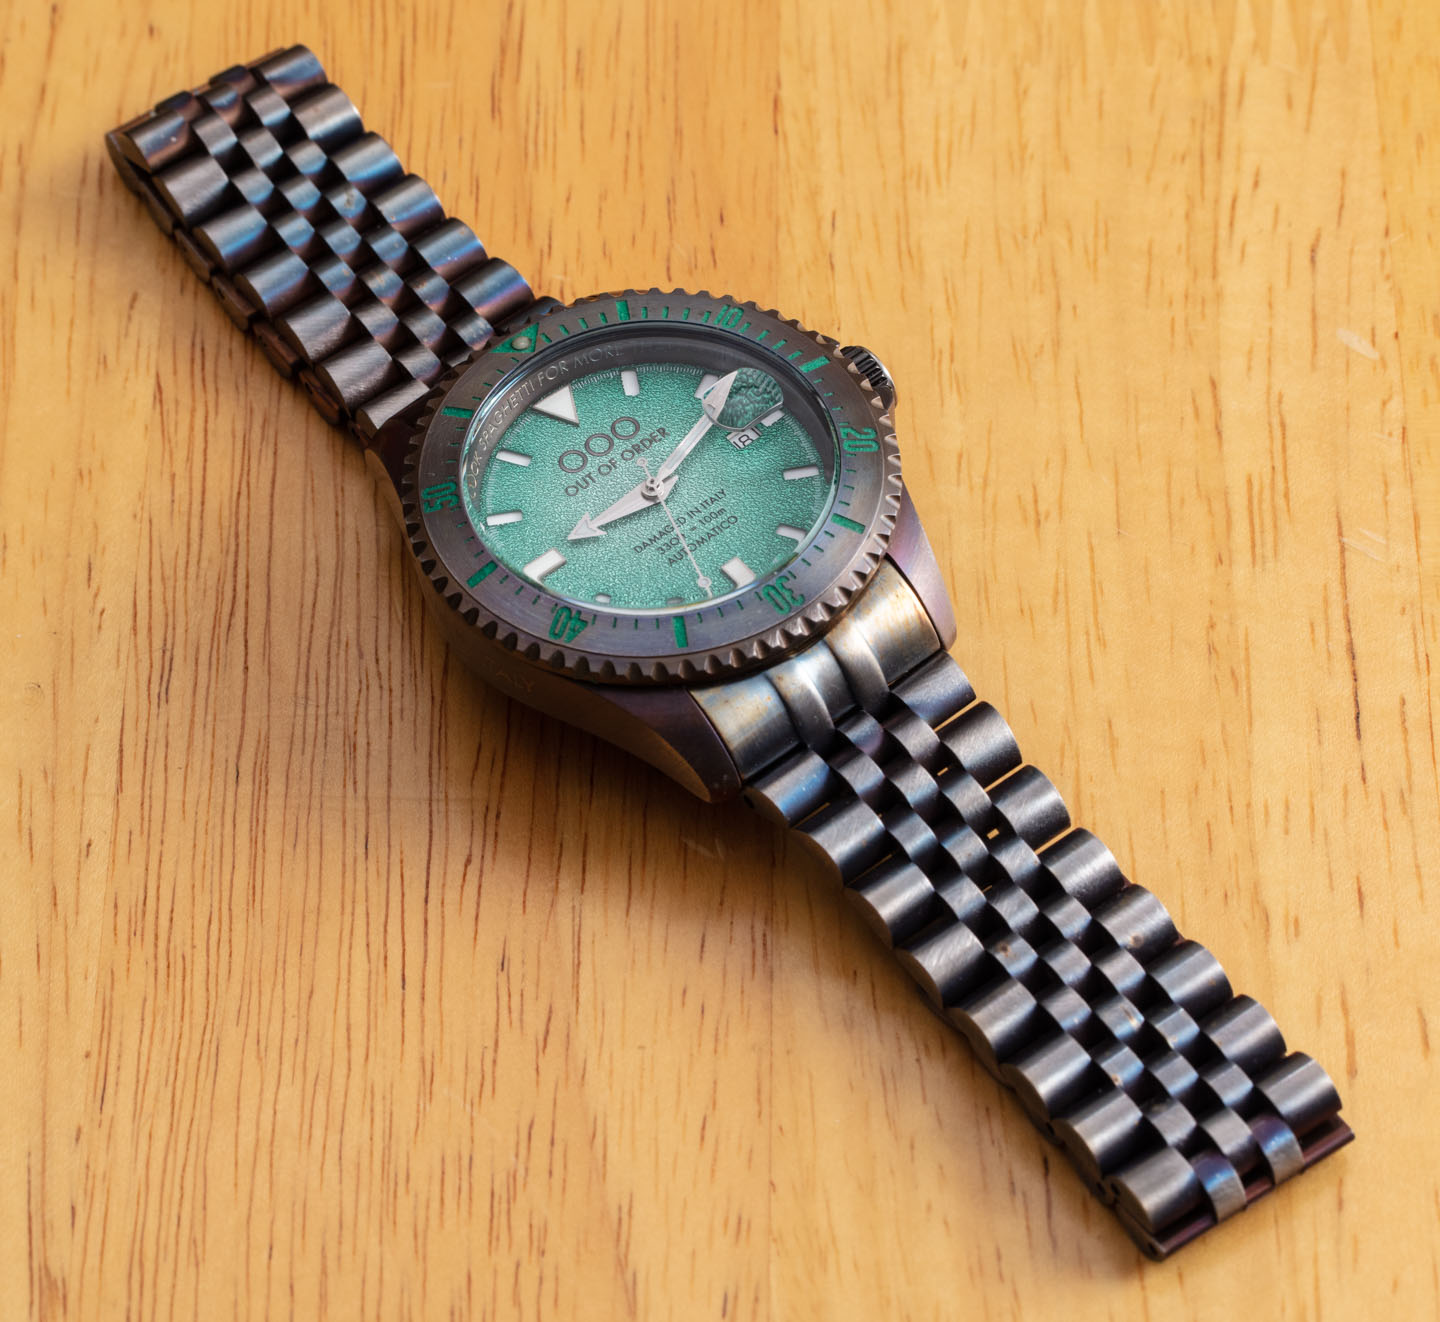 OOO Torpedine Blue Chronografo | WatchUSeek Watch Forums